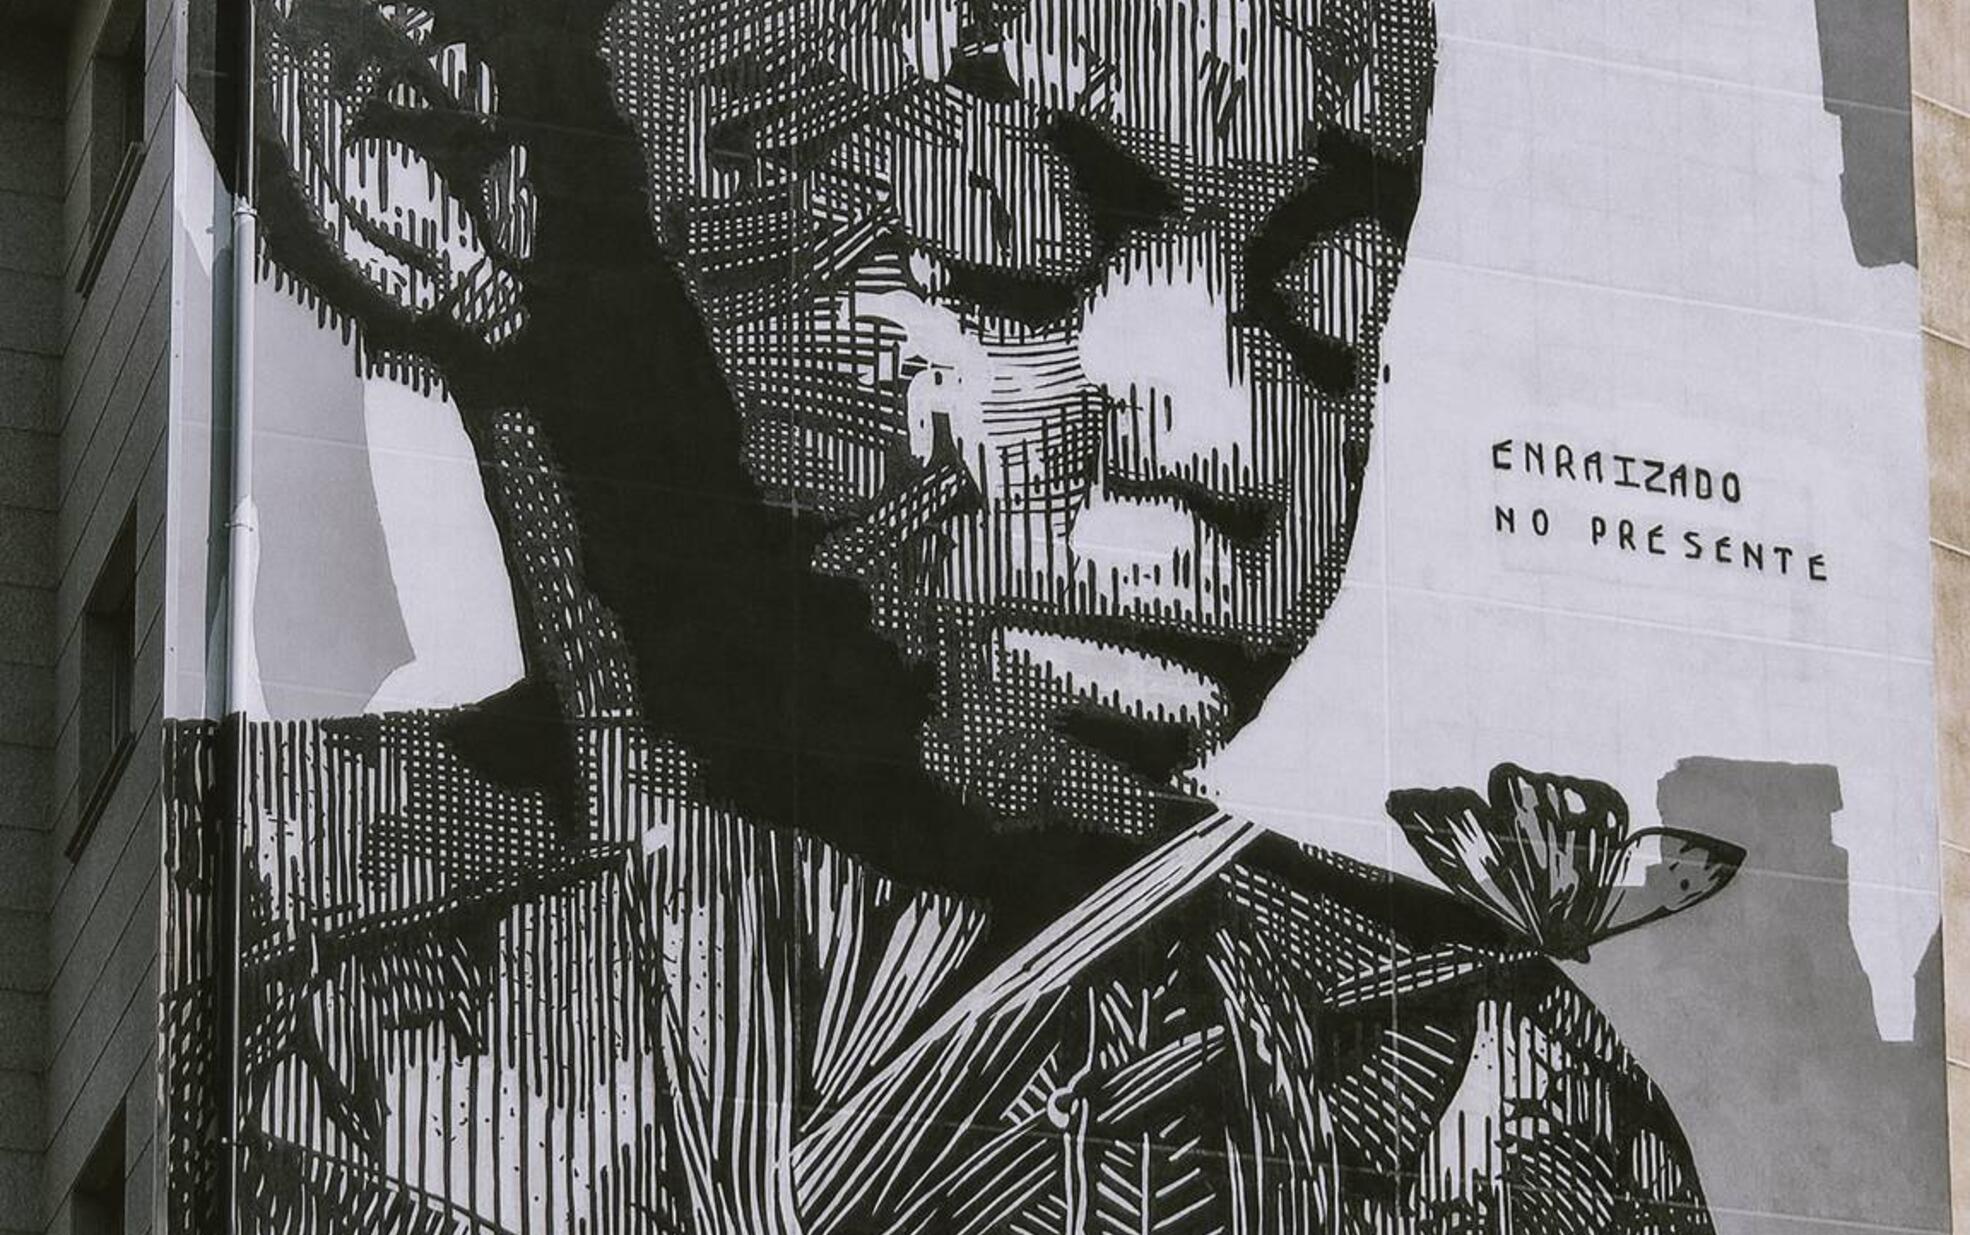 Mural de Arte Urbana, de artista Lagoense, nomeado para melhor do mundo